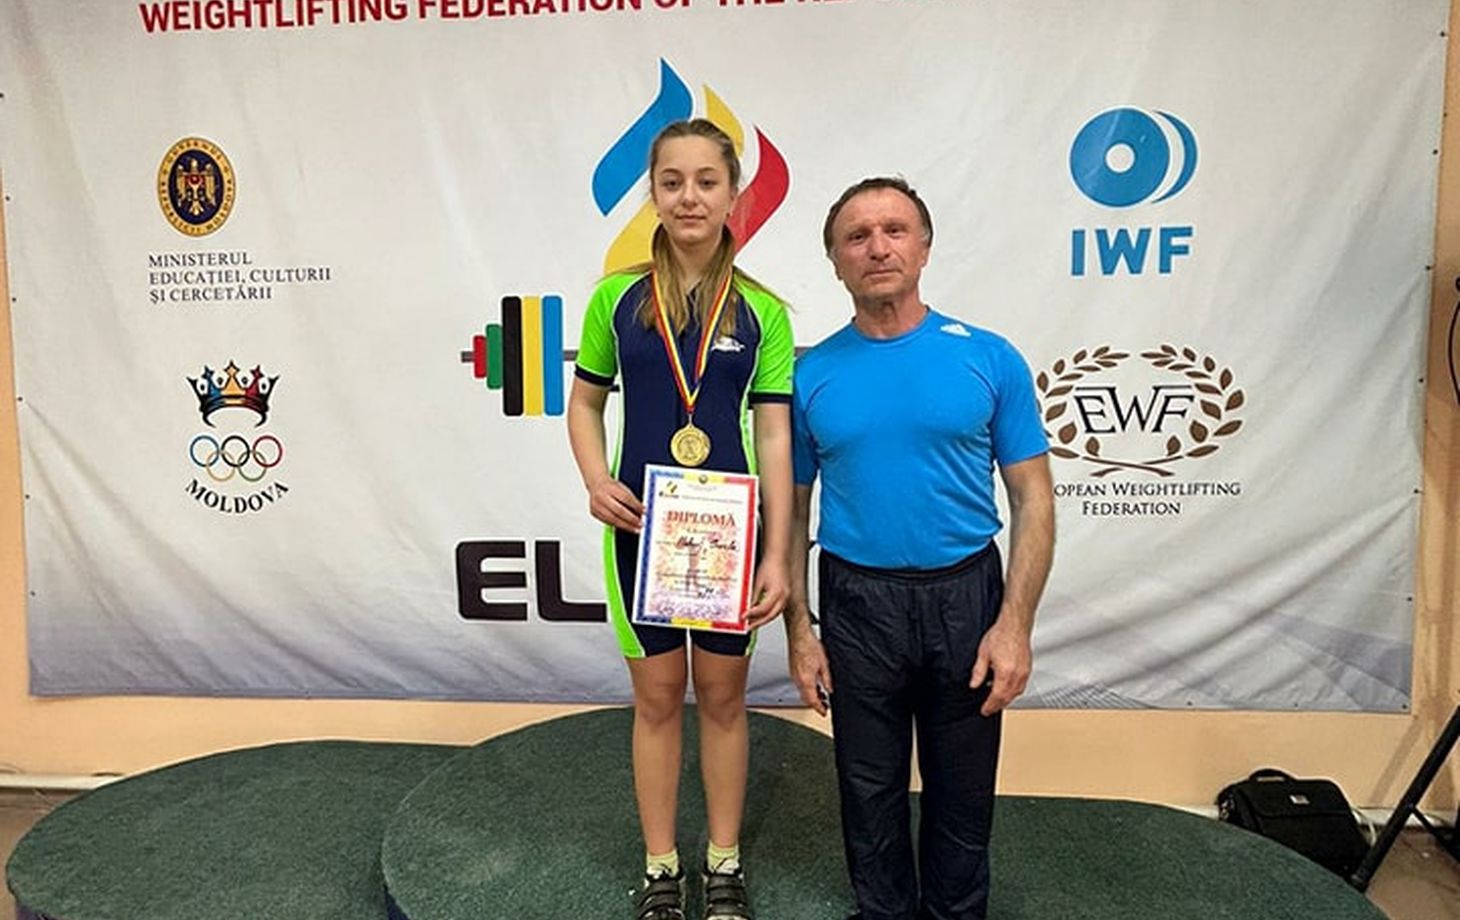 Чемпионат Молдовы по тяжёлой атлетике